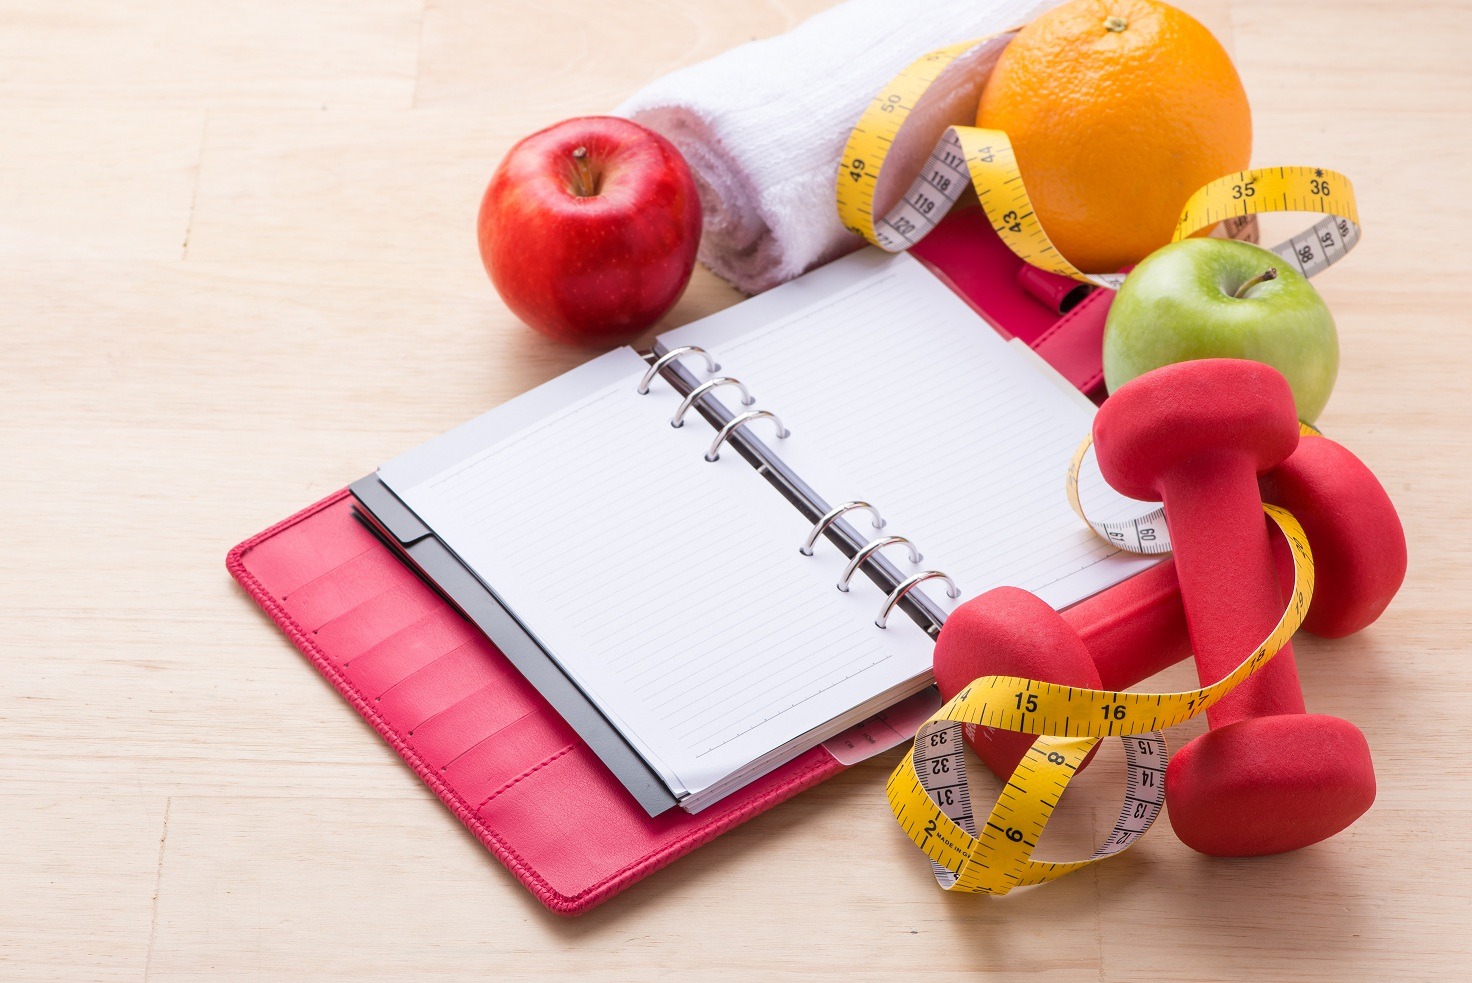 Slăbește fără dietă - 10 trucuri prin care poţi slăbi sănătos